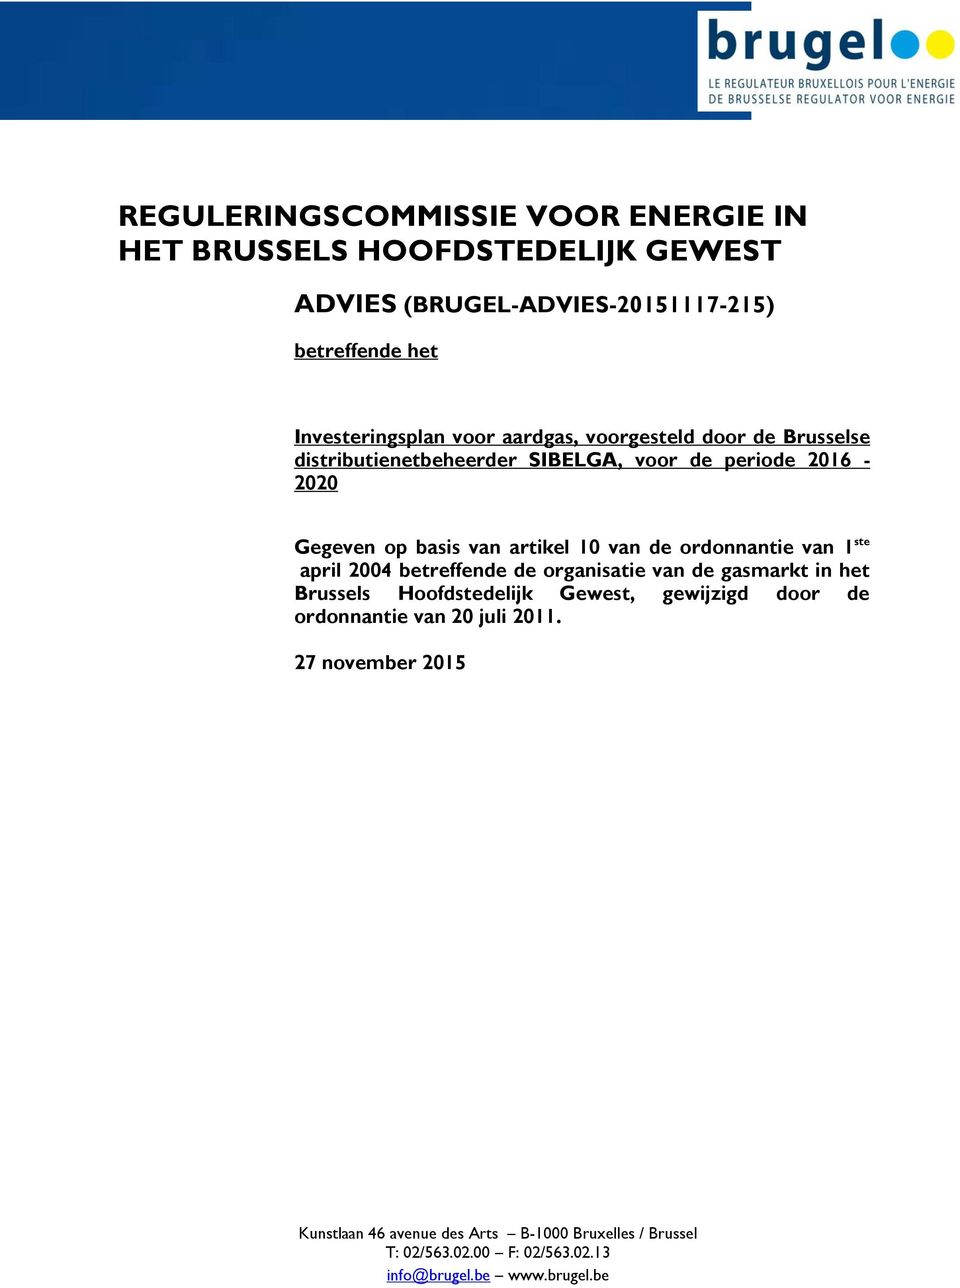 ordonnantie van 1 ste april 2004 betreffende de organisatie van de gasmarkt in het Brussels Hoofdstedelijk Gewest, gewijzigd door de ordonnantie